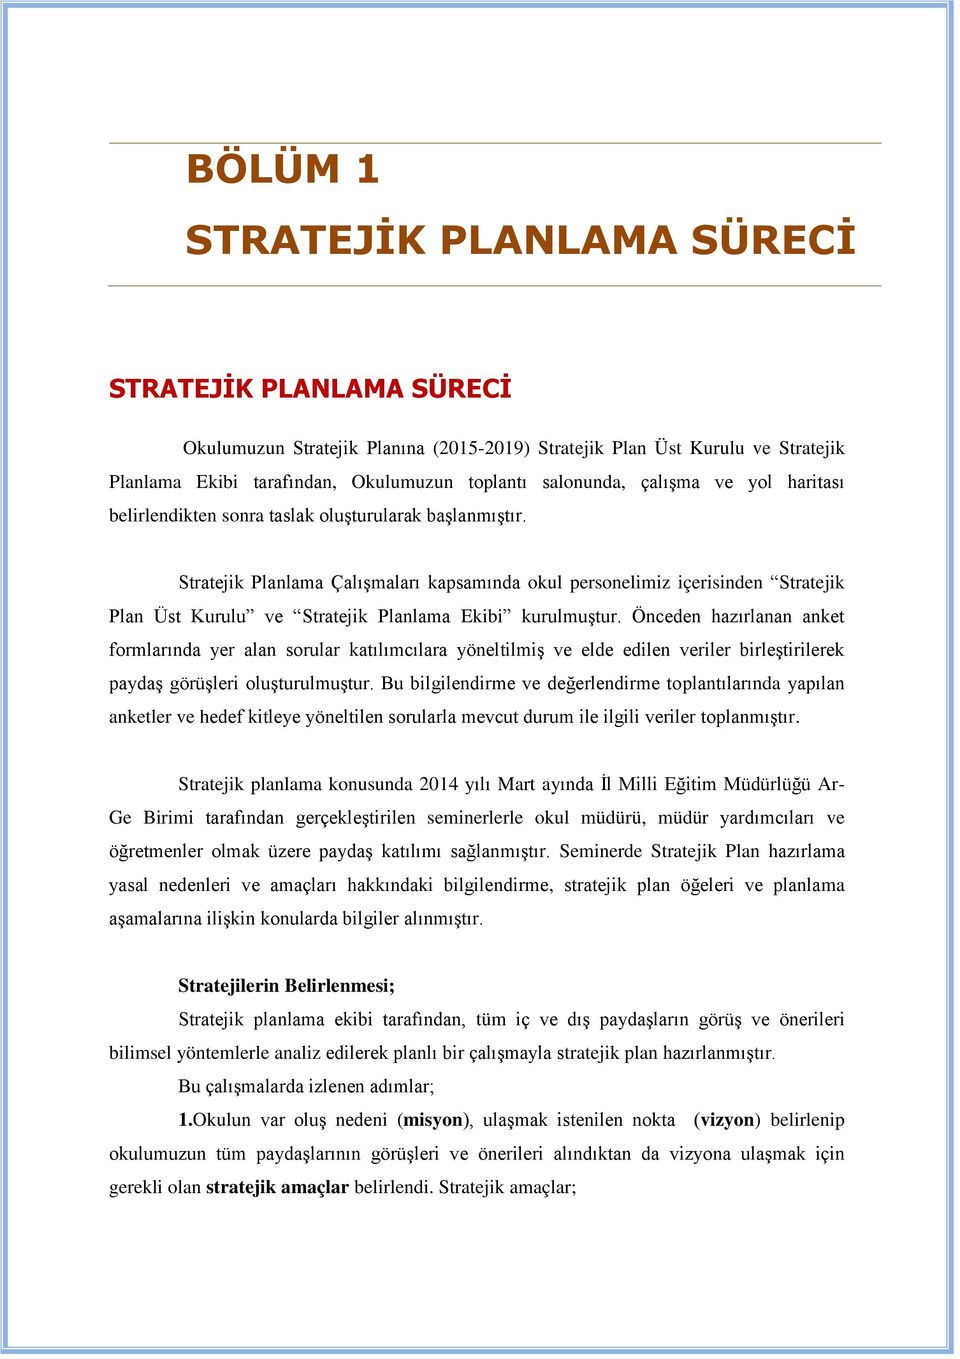 Stratejik Planlama Çalışmaları kapsamında okul personelimiz içerisinden Stratejik Plan Üst Kurulu ve Stratejik Planlama Ekibi kurulmuştur.